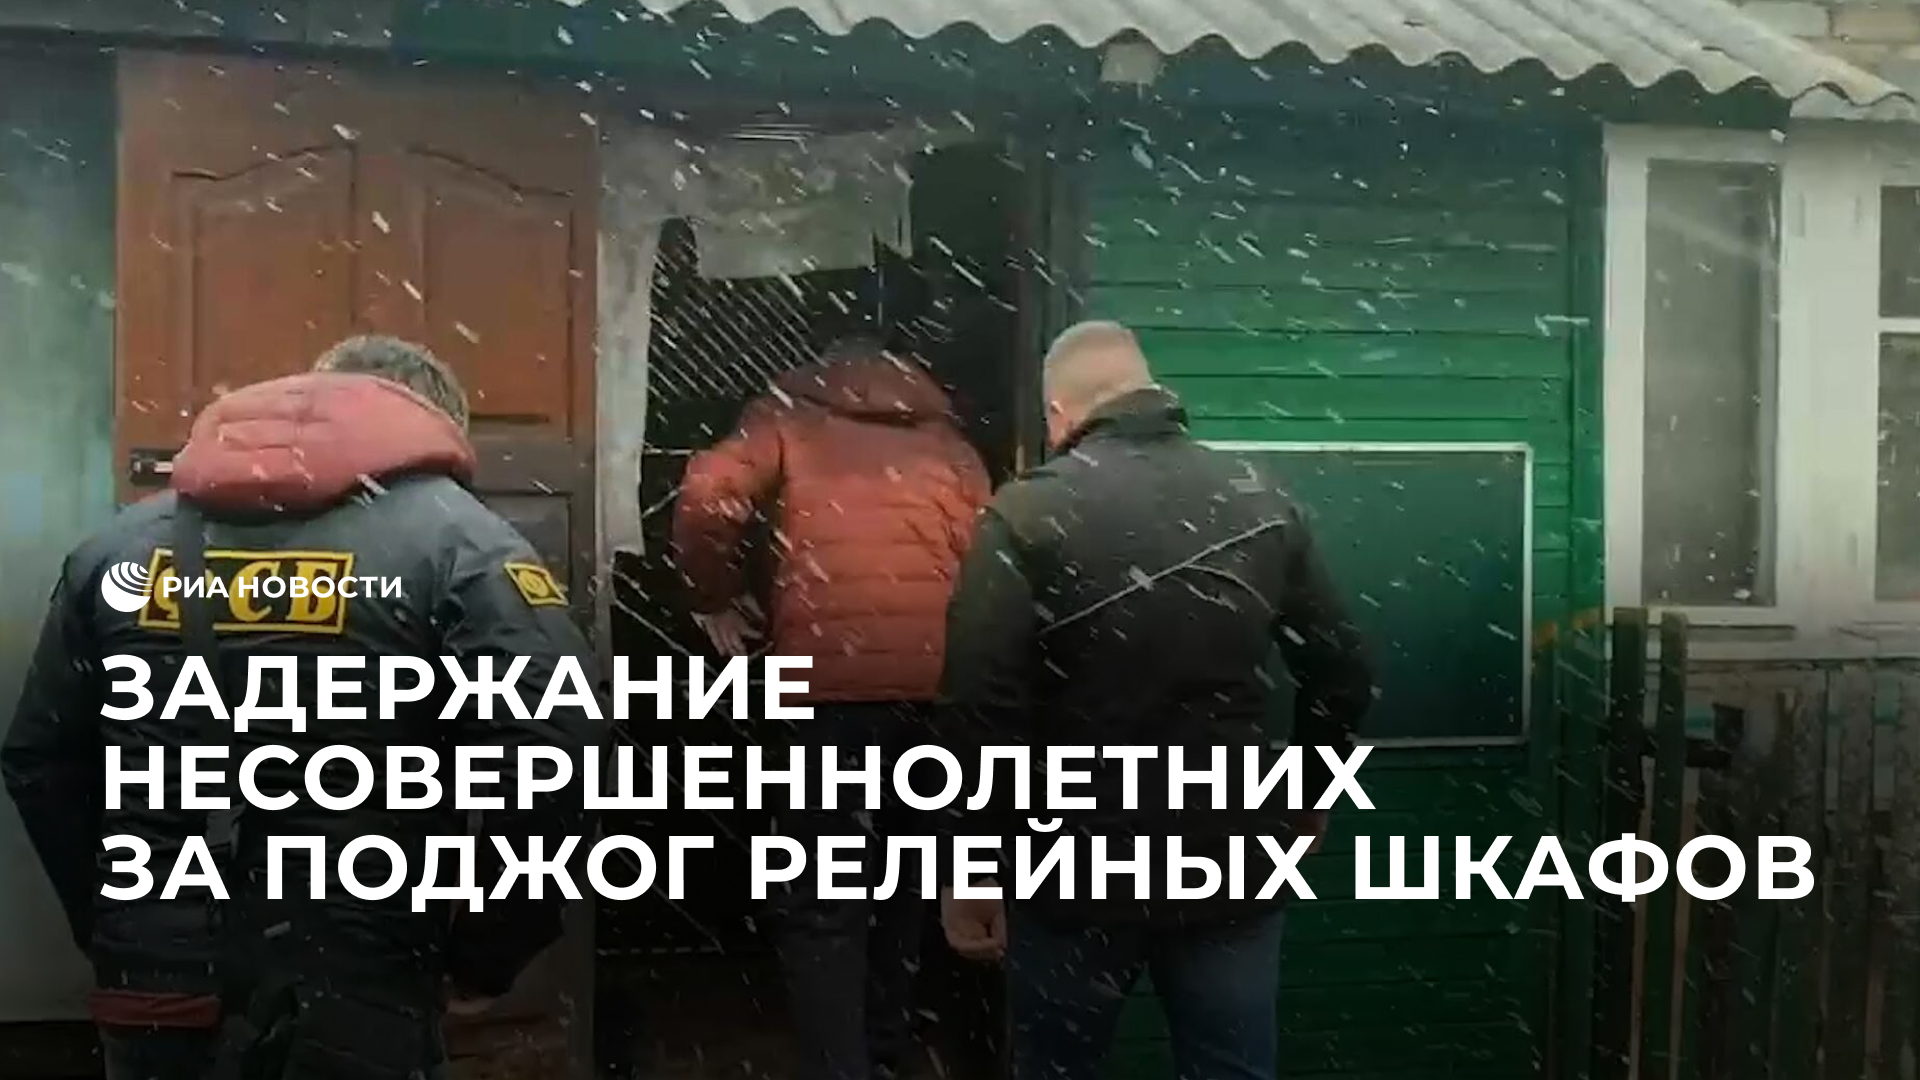 Задержание несовершеннолетних, совершивших поджог релейных шкафов в Смоленской области